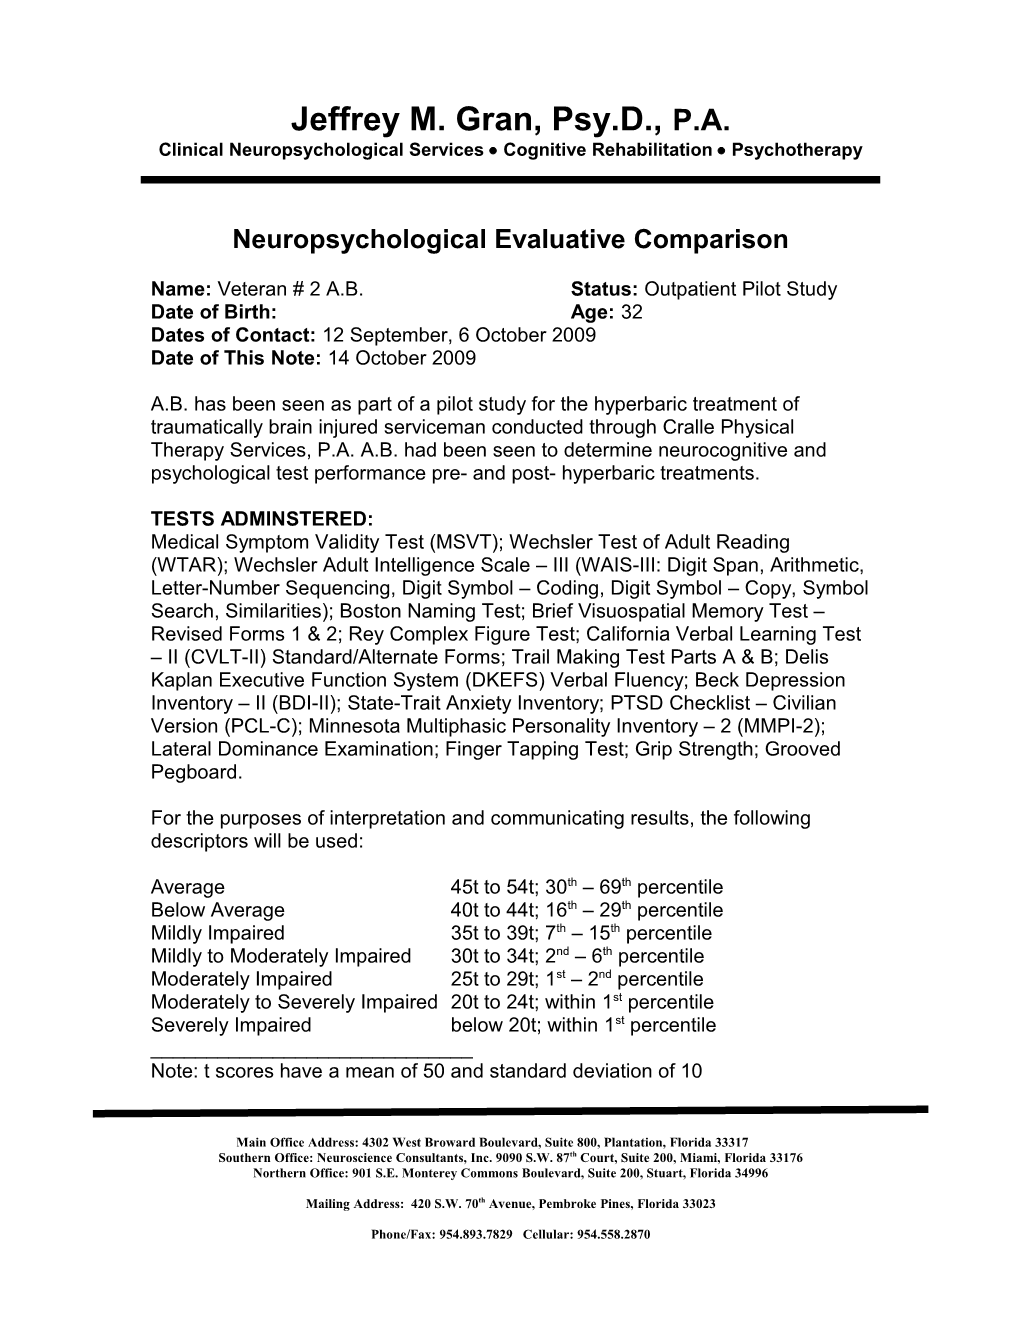 Neuropsychological Evaluative Comparison